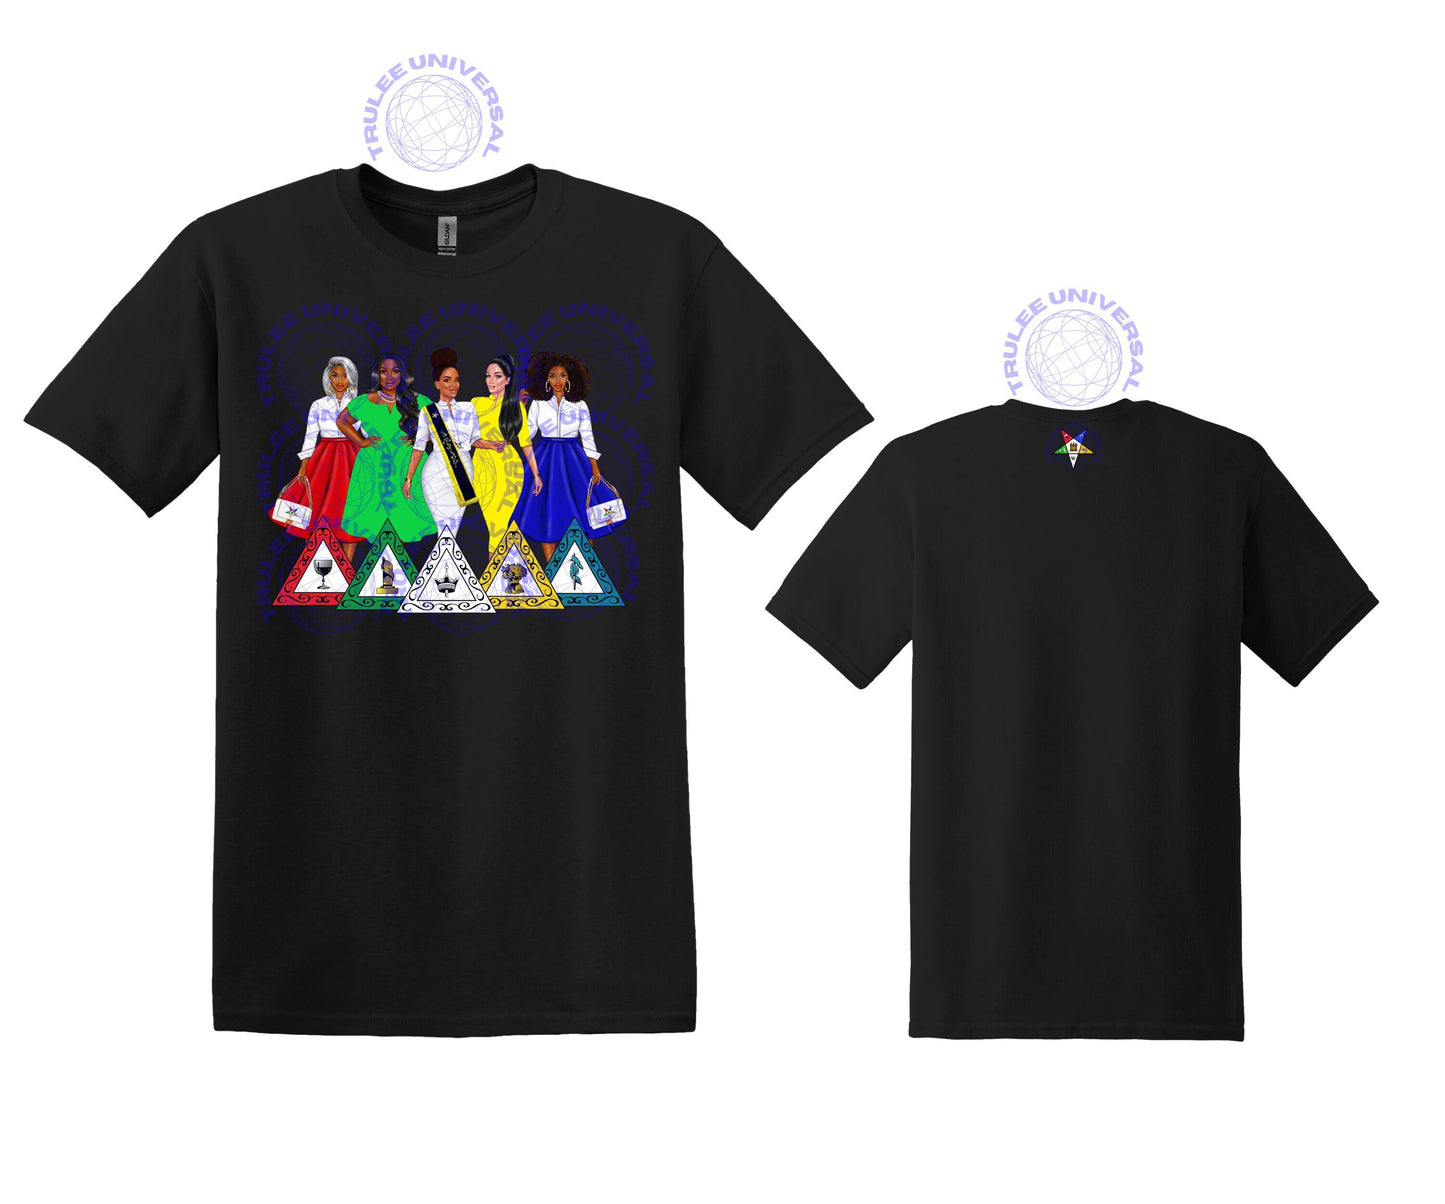 5 heroines Sisters Order of Eastern Star OES Sorority T-shirt teeshirt tee-shirt Sisterhood Freemasonic both star designs